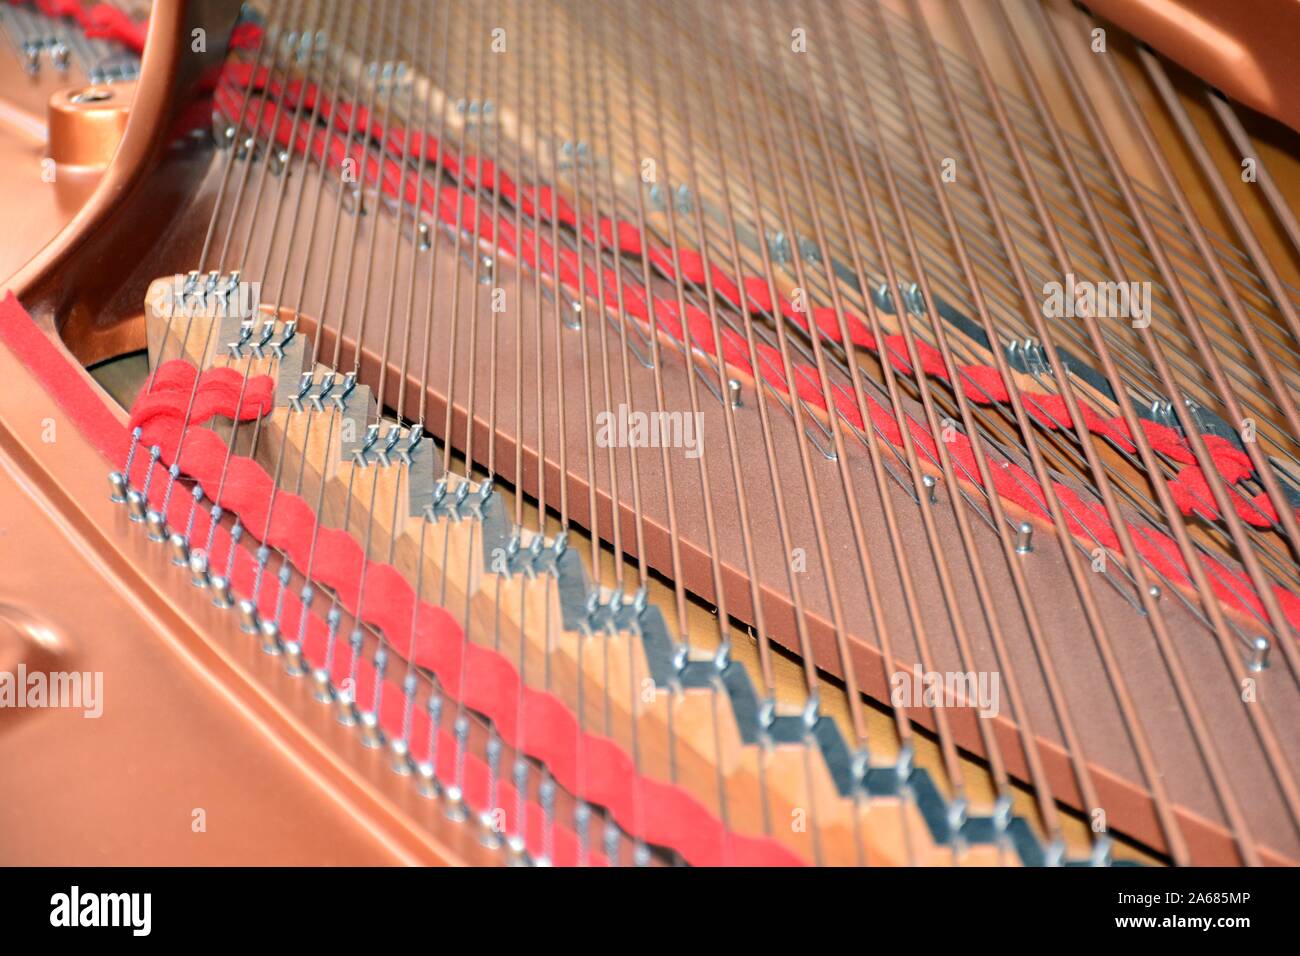 Caja de resonancia, Interior y cuerdas de un Piano de cola Stockfoto